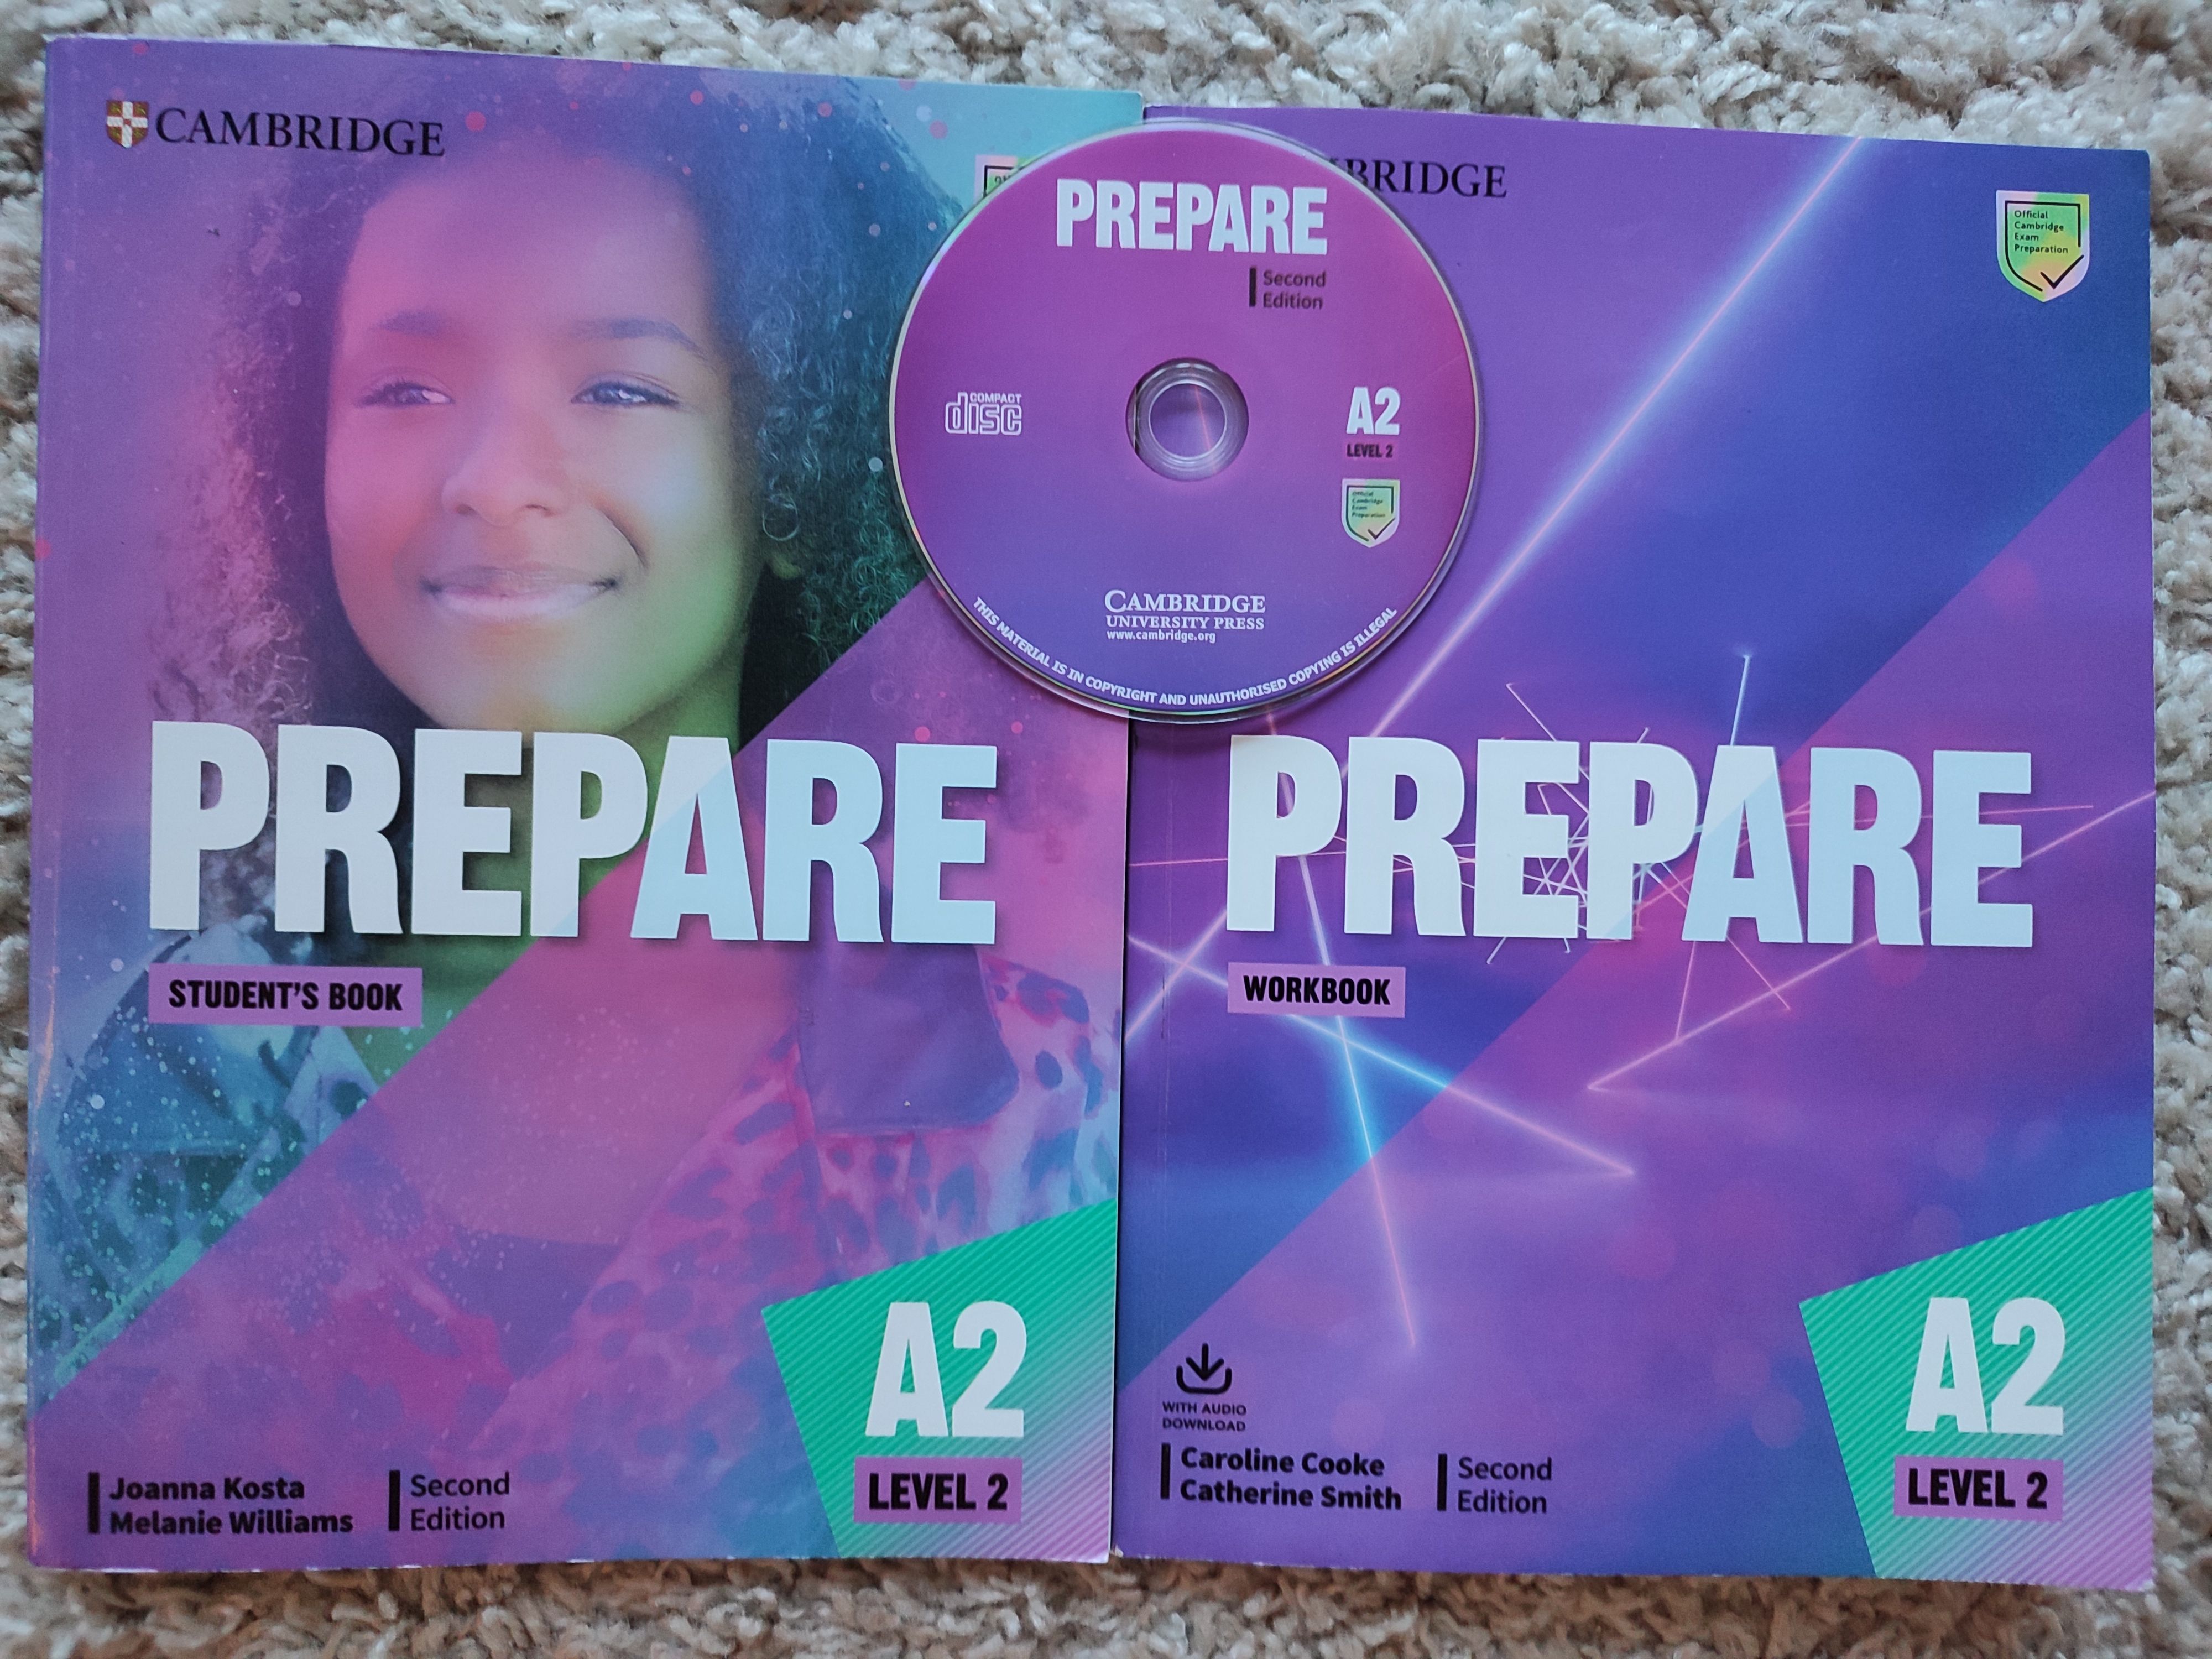 Preape 2учебник. Учебник prepare 2. Prepare second Edition. 18:10 4 Prepare second Edition Level 6 2 из 2.